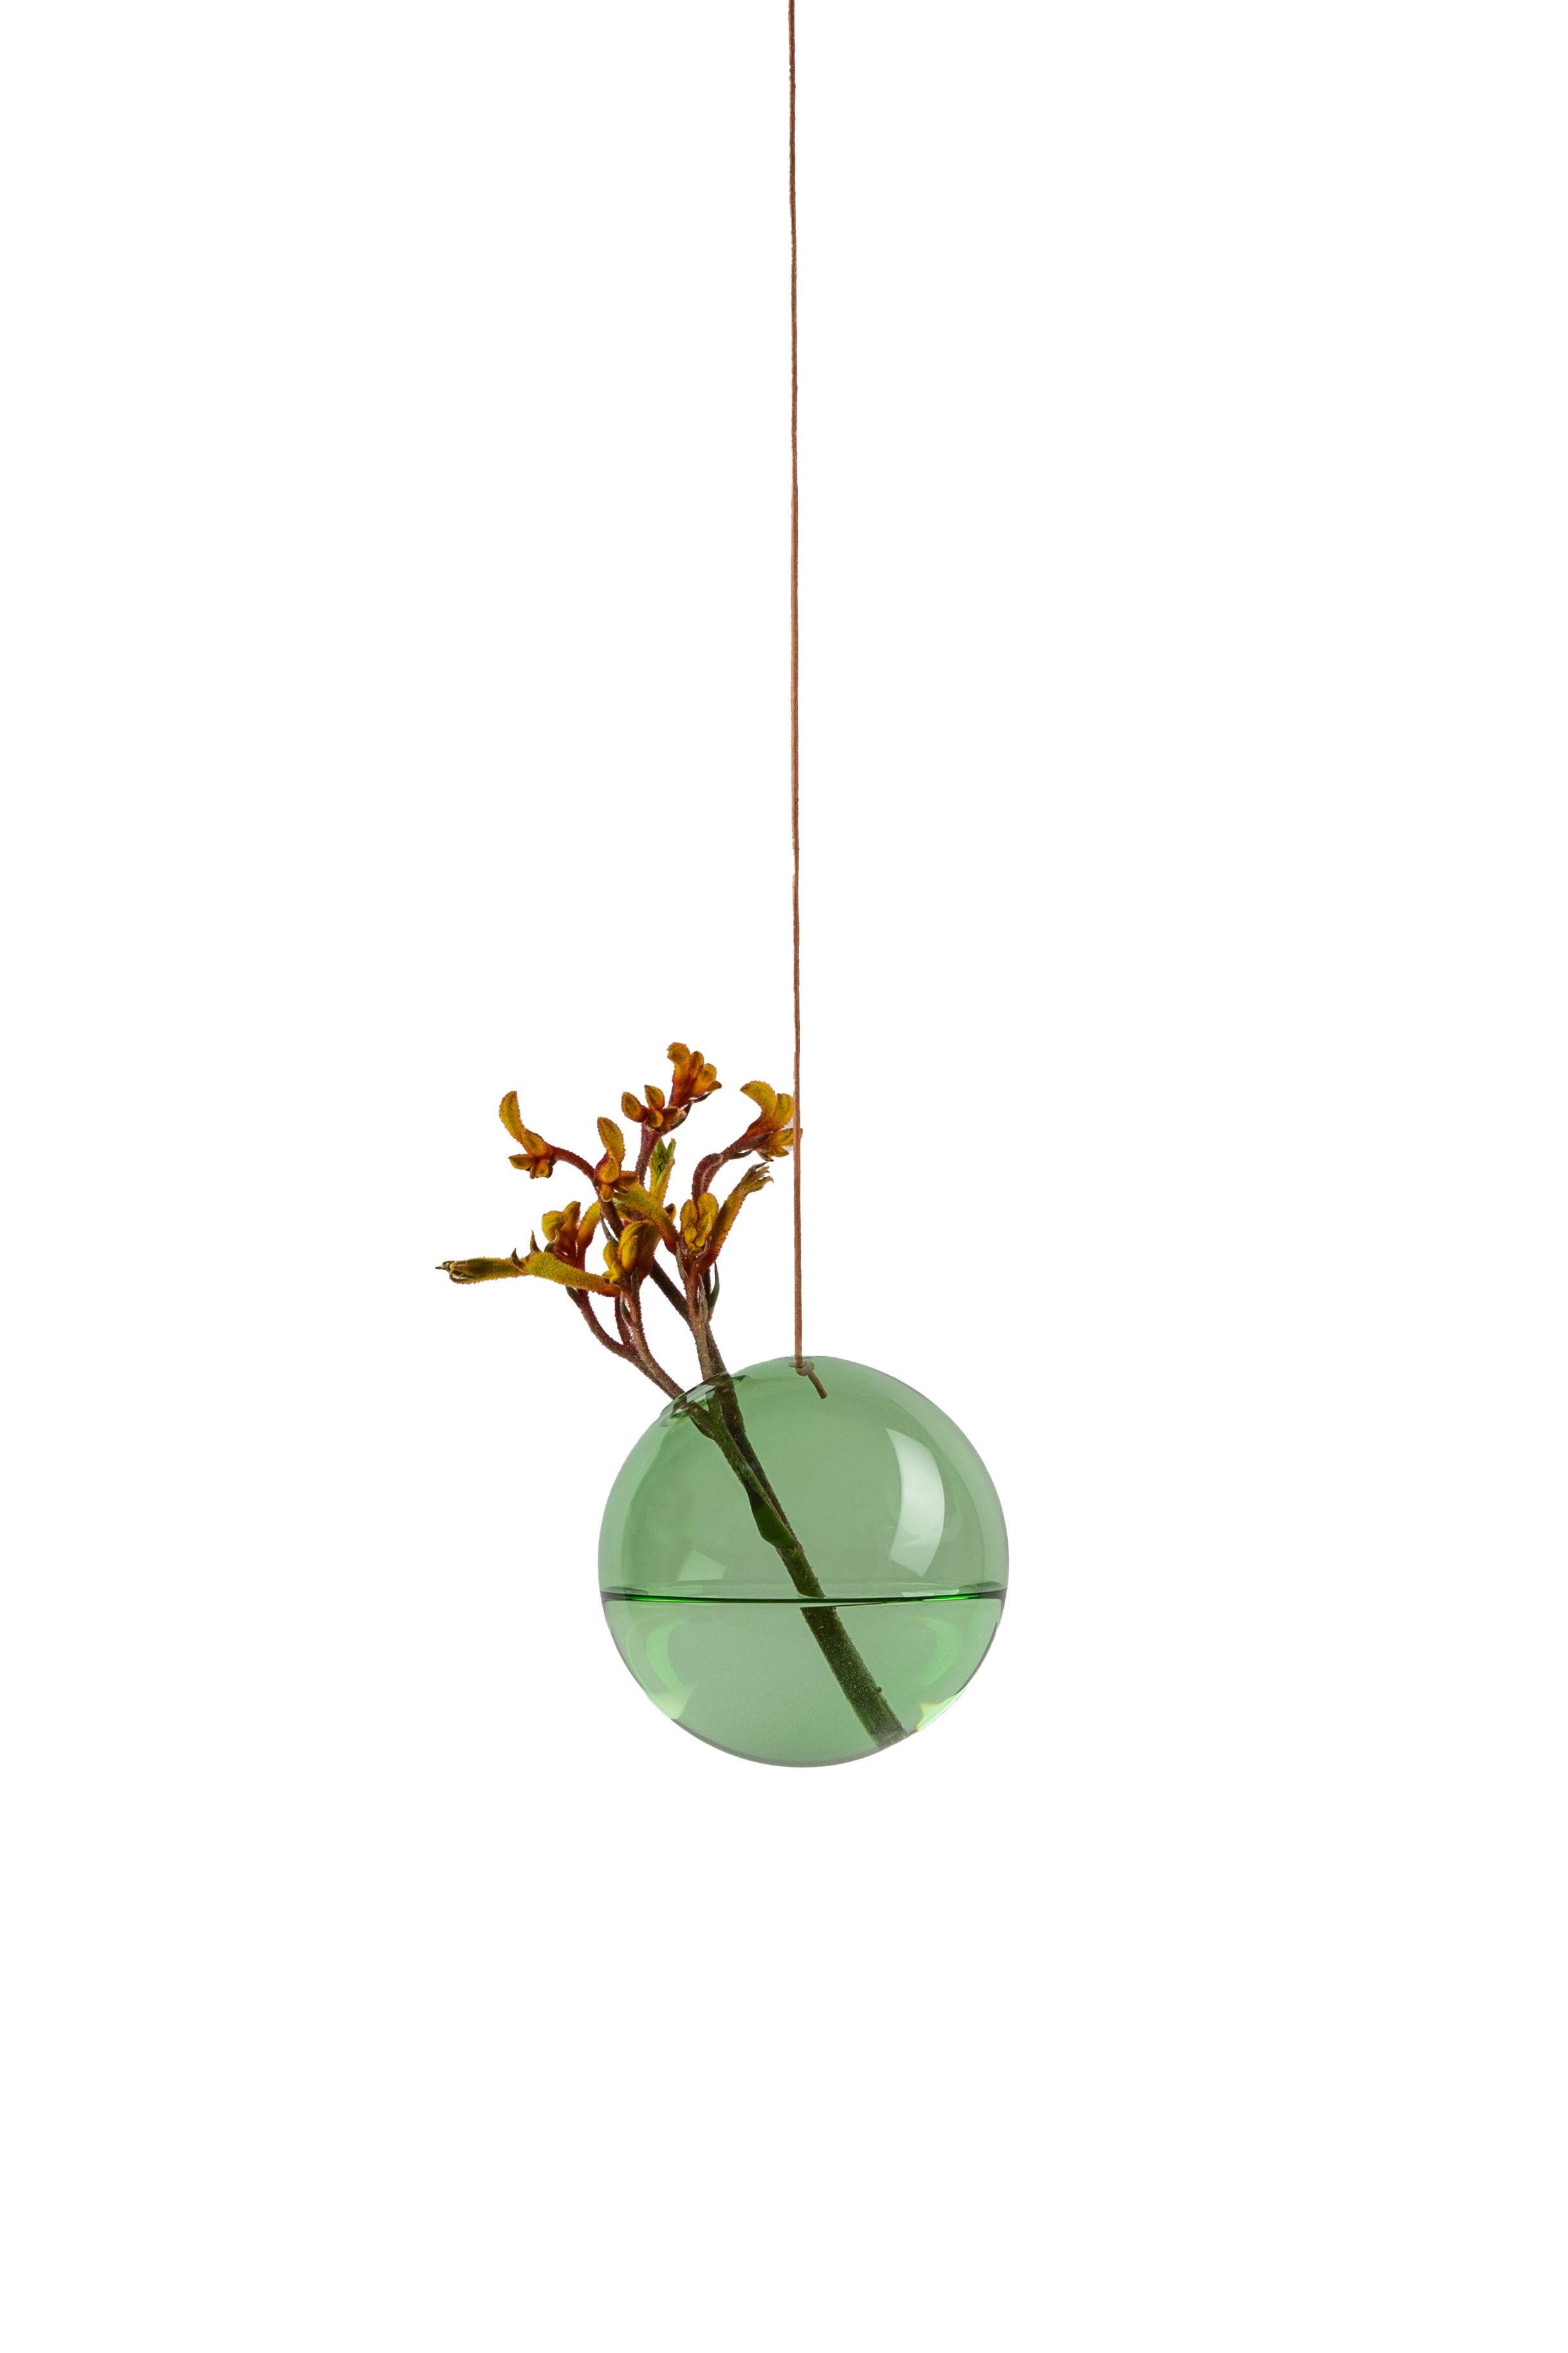 Studio sur la suspension du vase à bulles de fleurs, vert